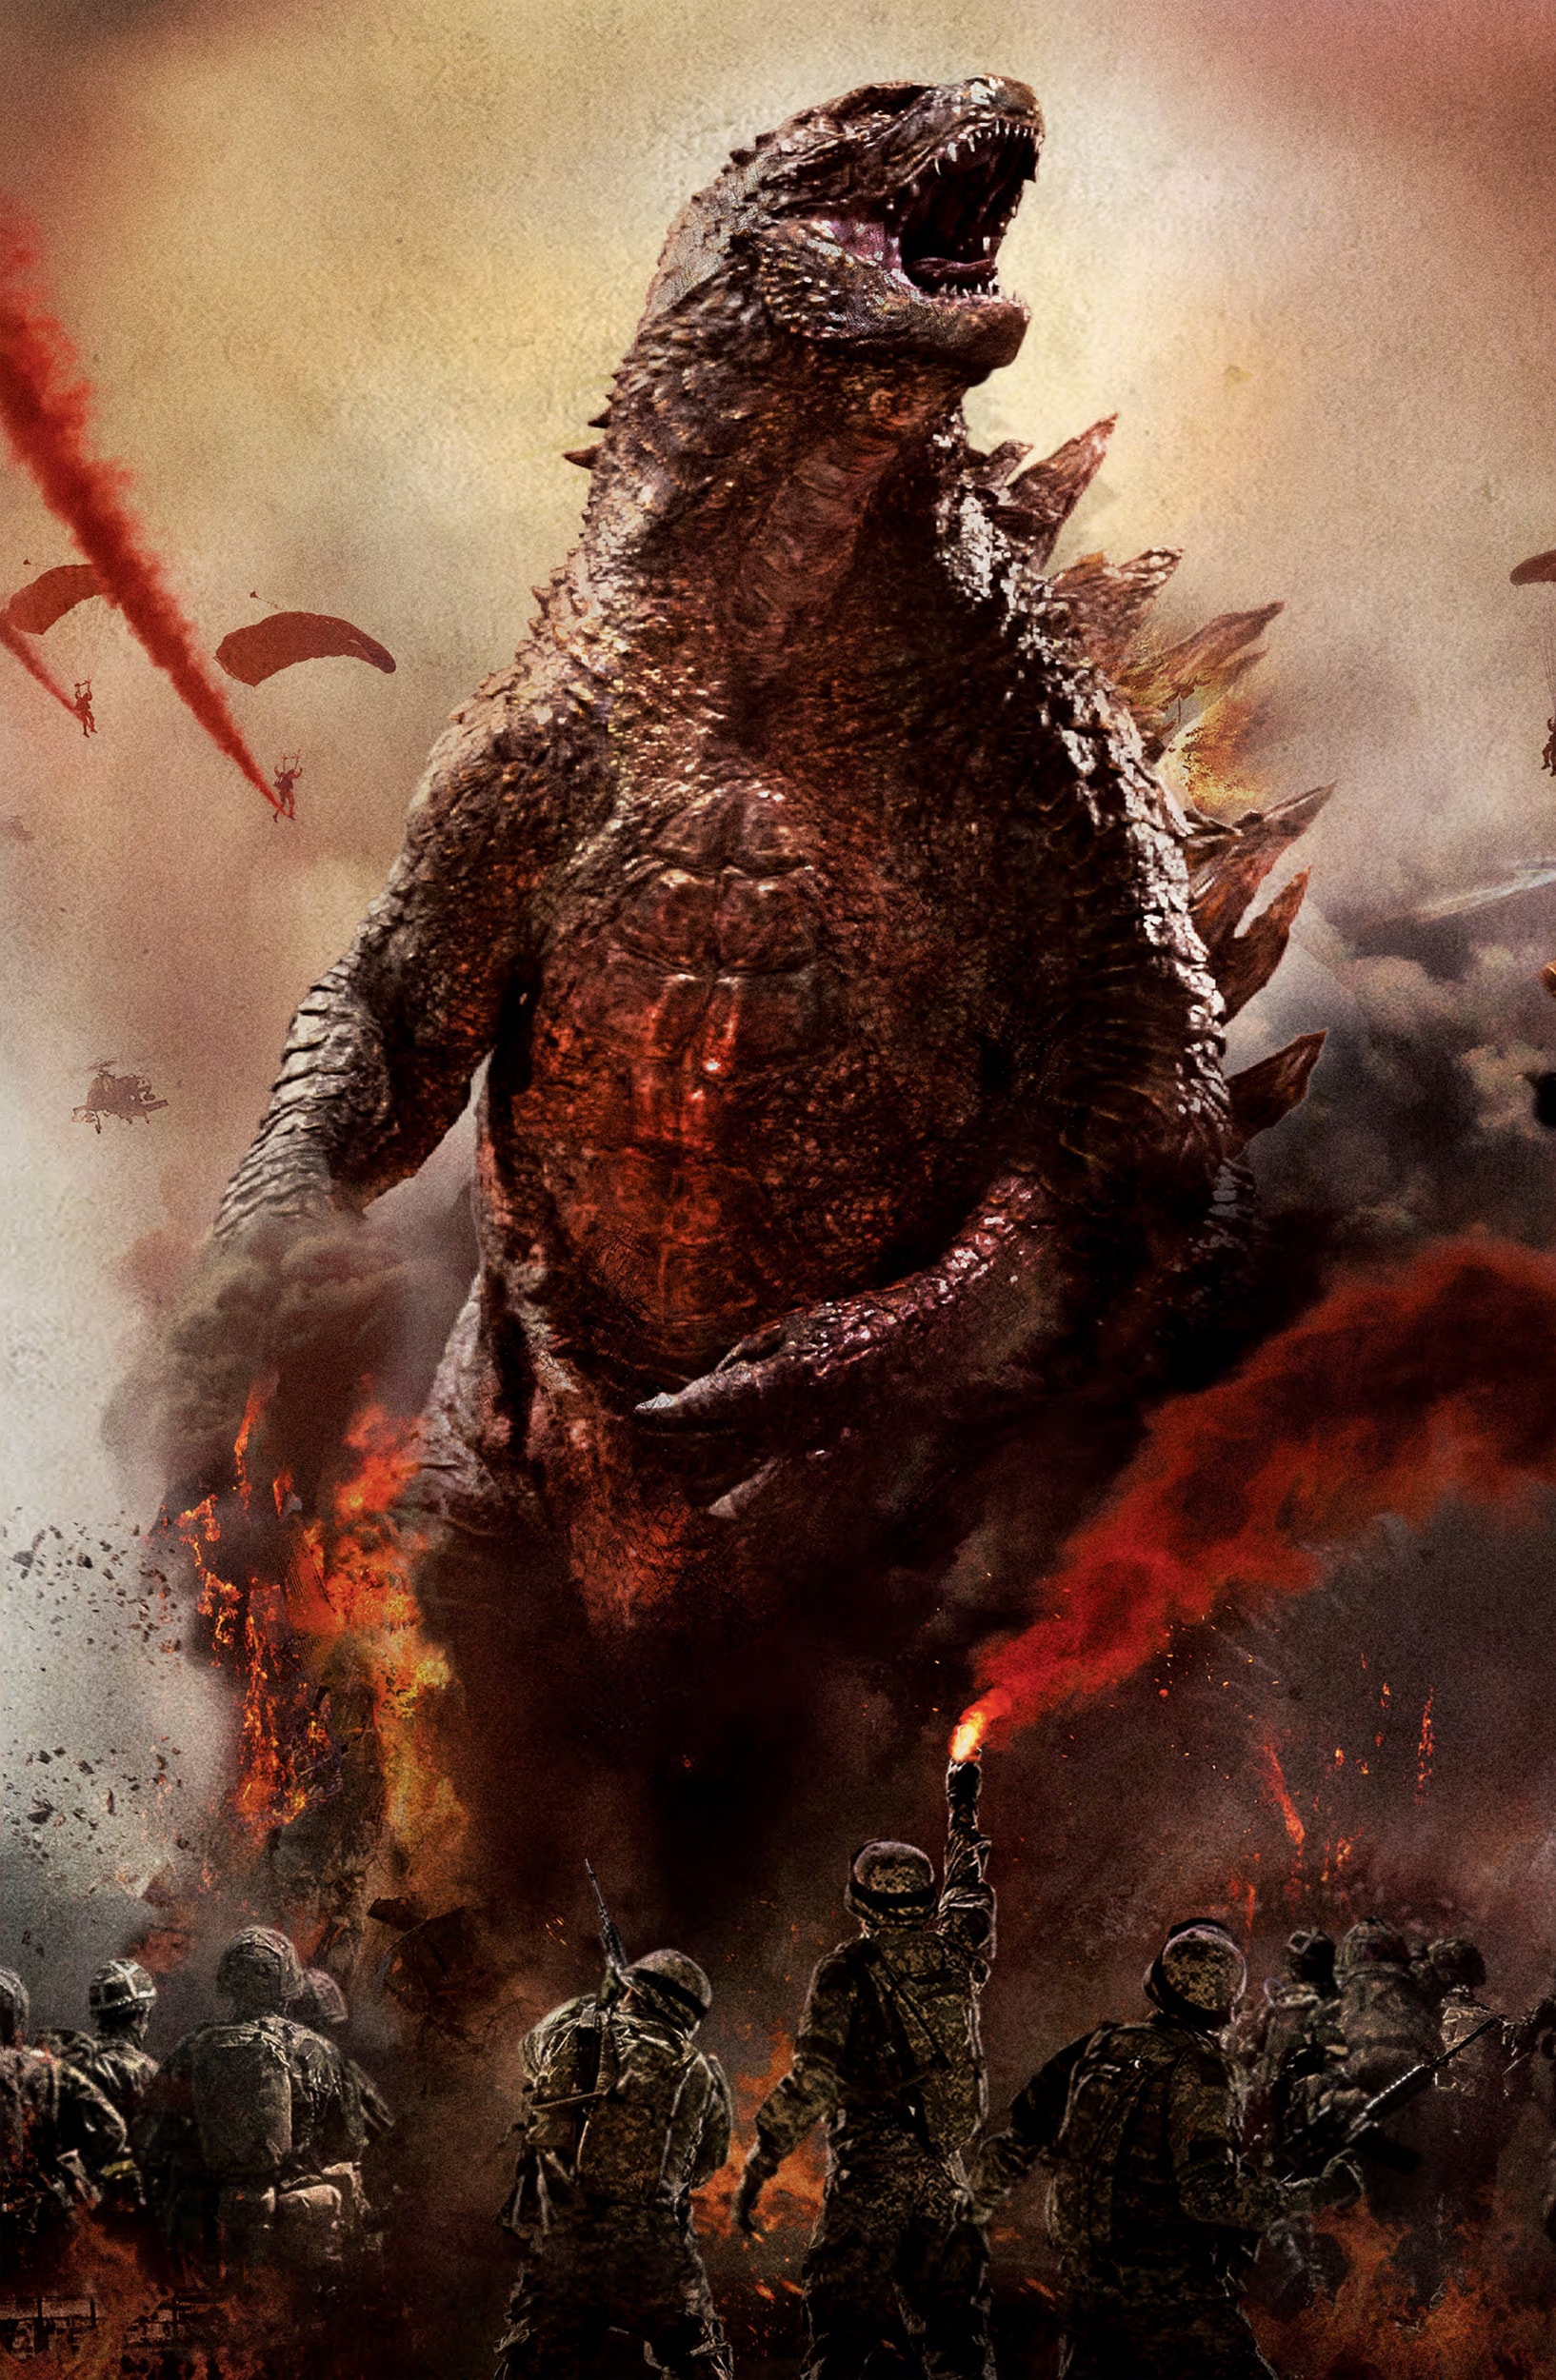 Godzilla 2014 For Mobile - Godzilla 2014 , HD Wallpaper & Backgrounds